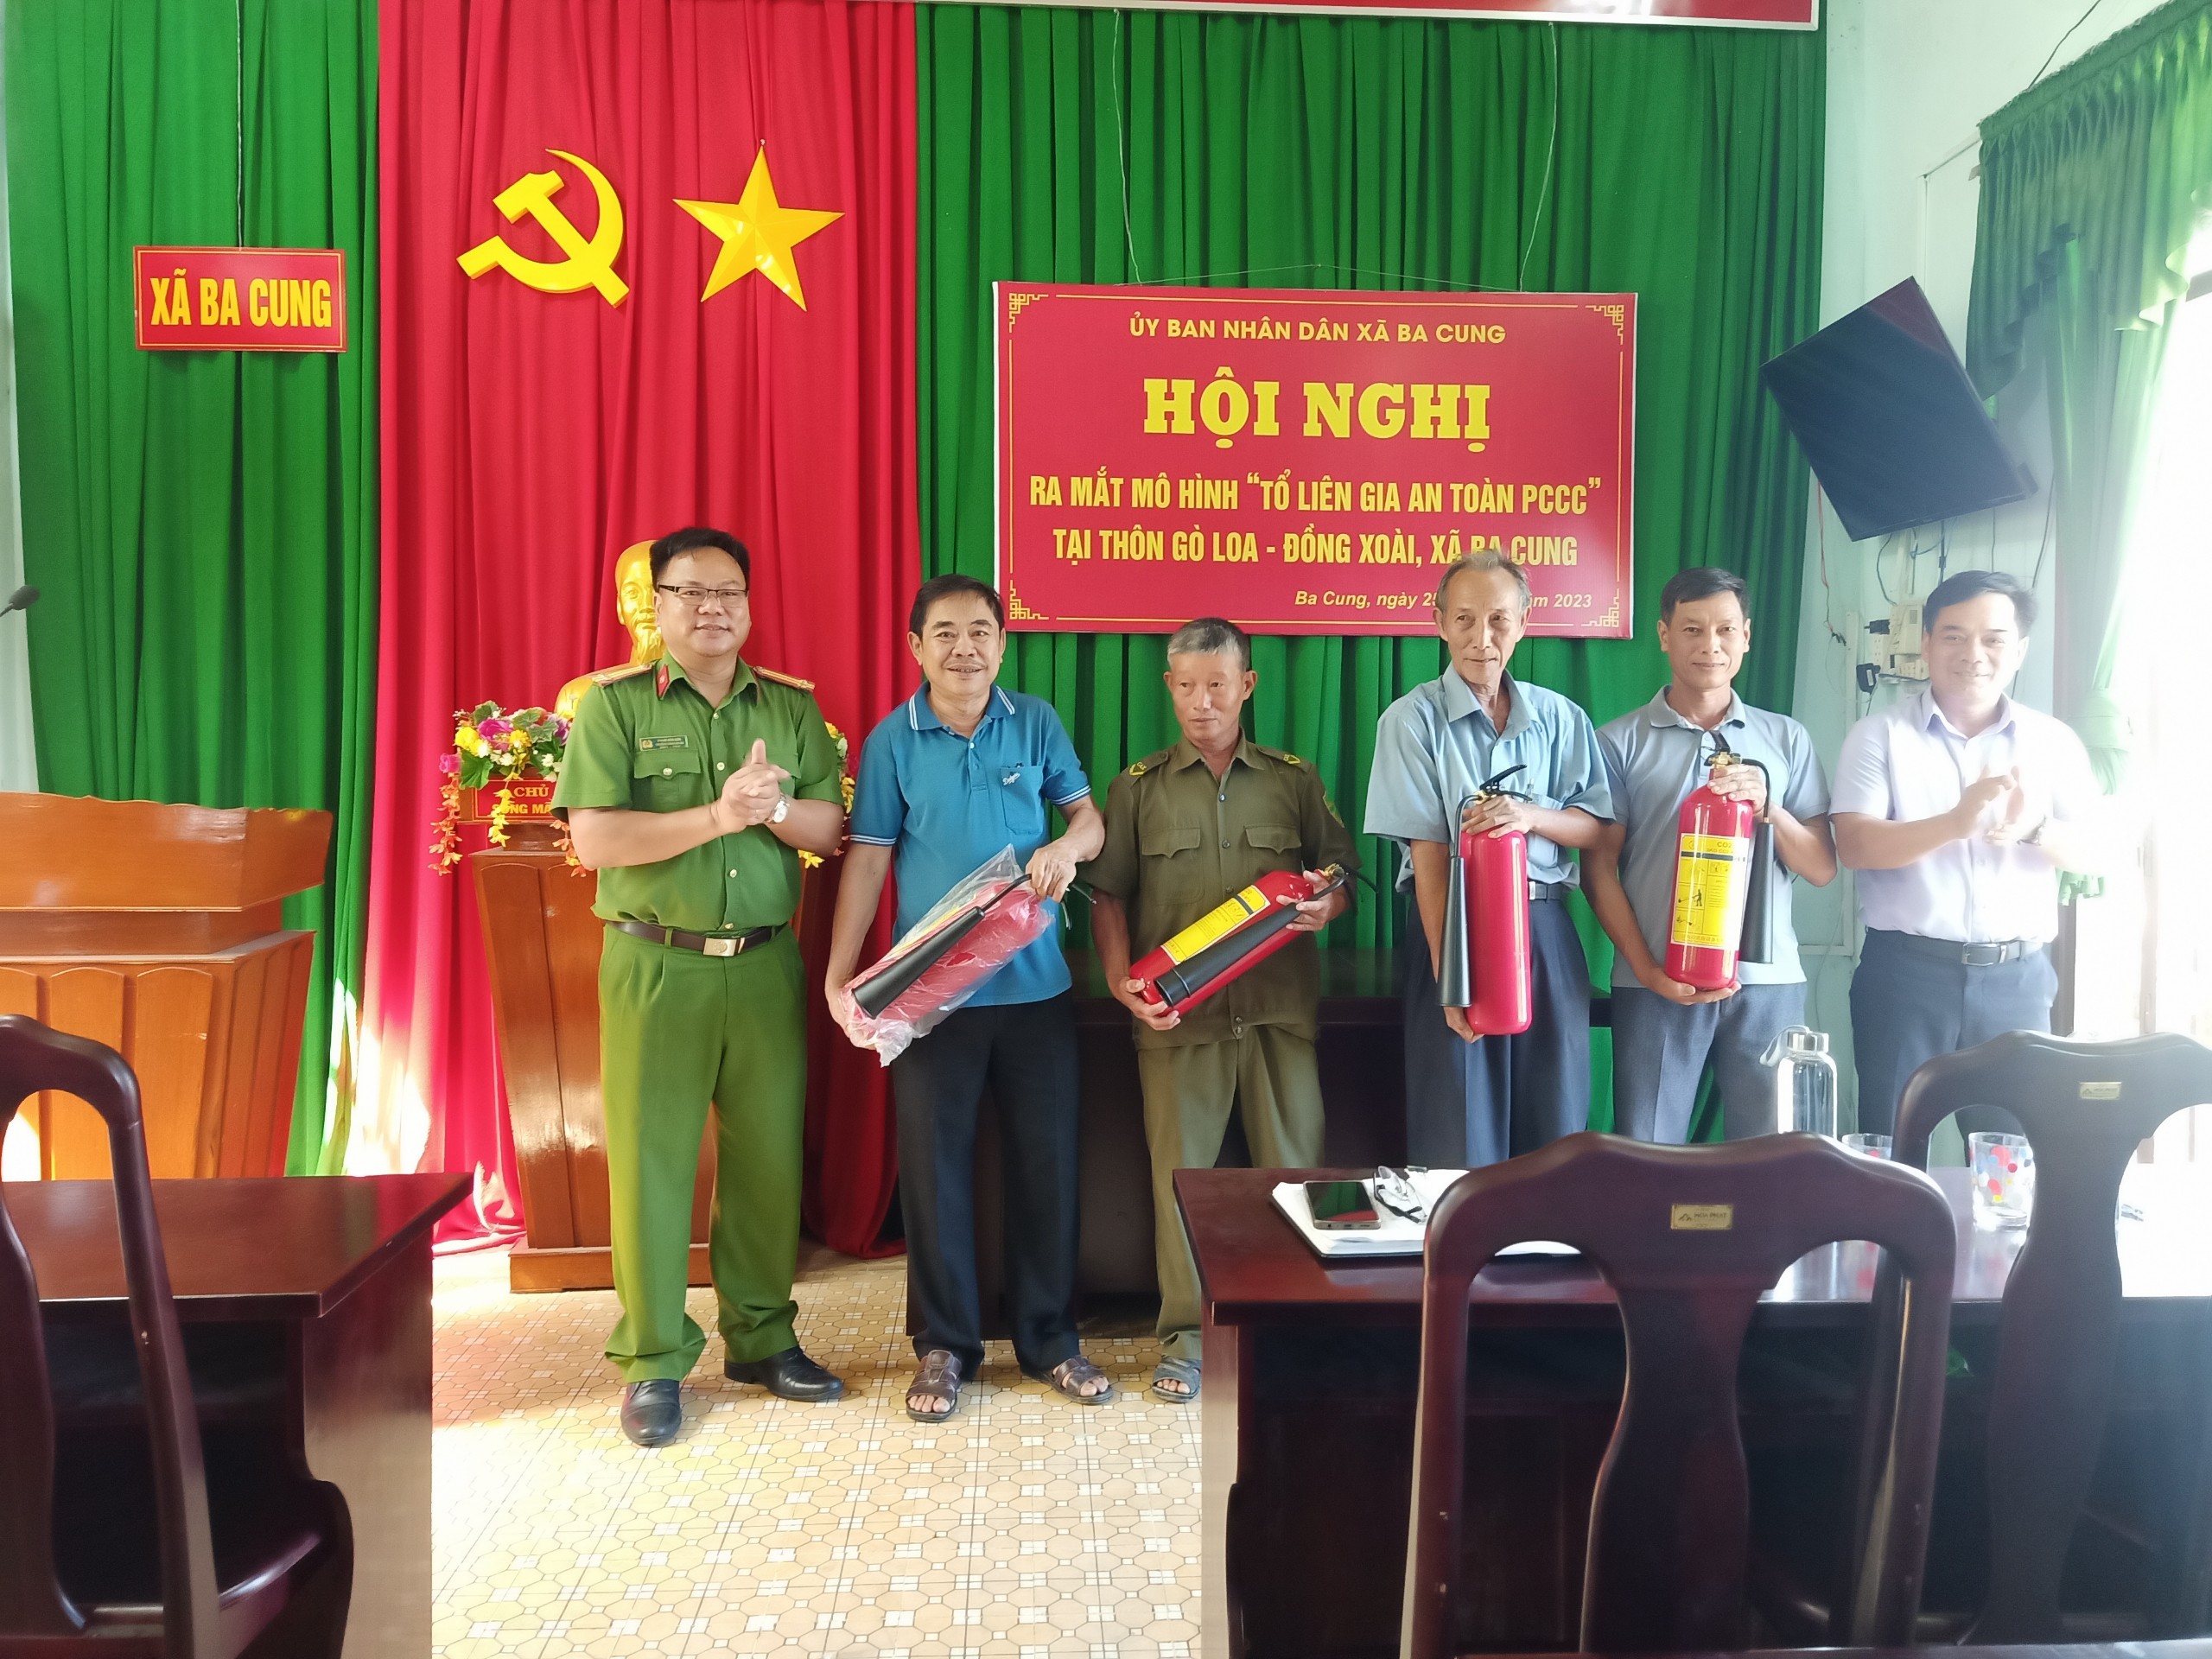 UBND xã Ba Cung tổ chức ra mắt mô hình Tổ liên gia an toàn phòng cháy chữa cháy tại thôn Gò Loa - Đồng Xoài.